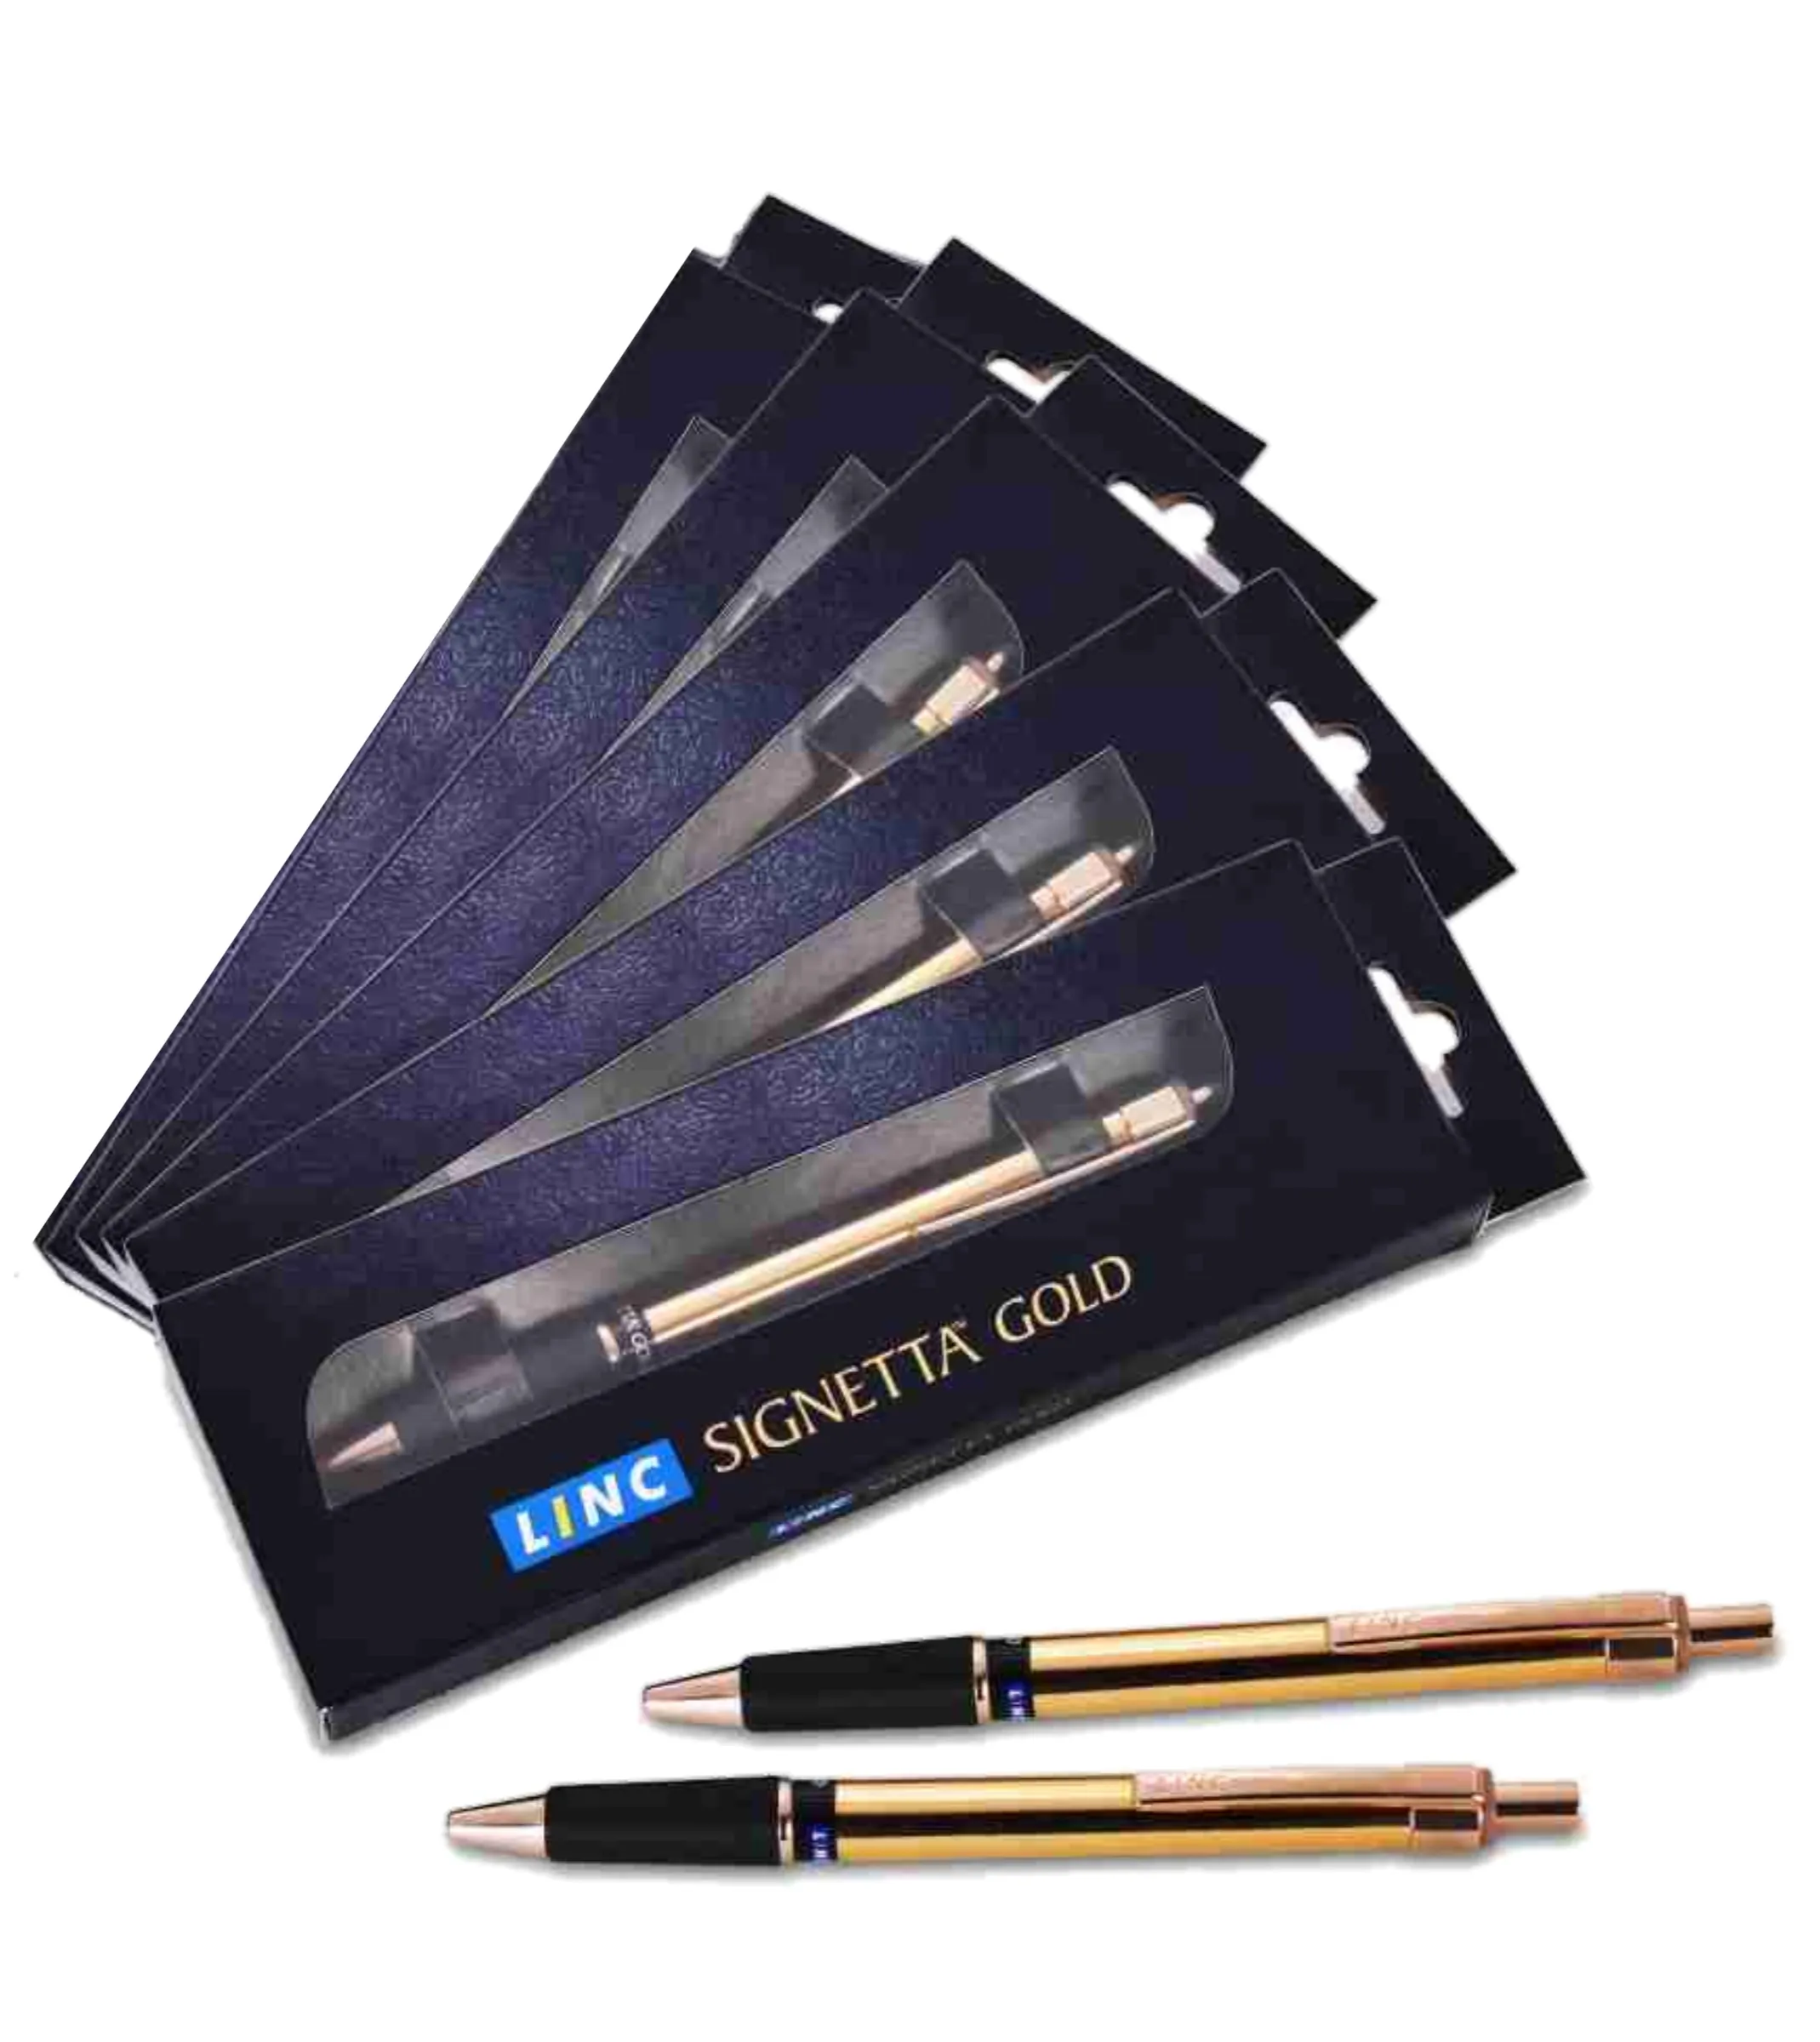 Linc Signetta Gold Ball Pen ,Blue Pen, 0.7 MM, Pack of 5 Pen